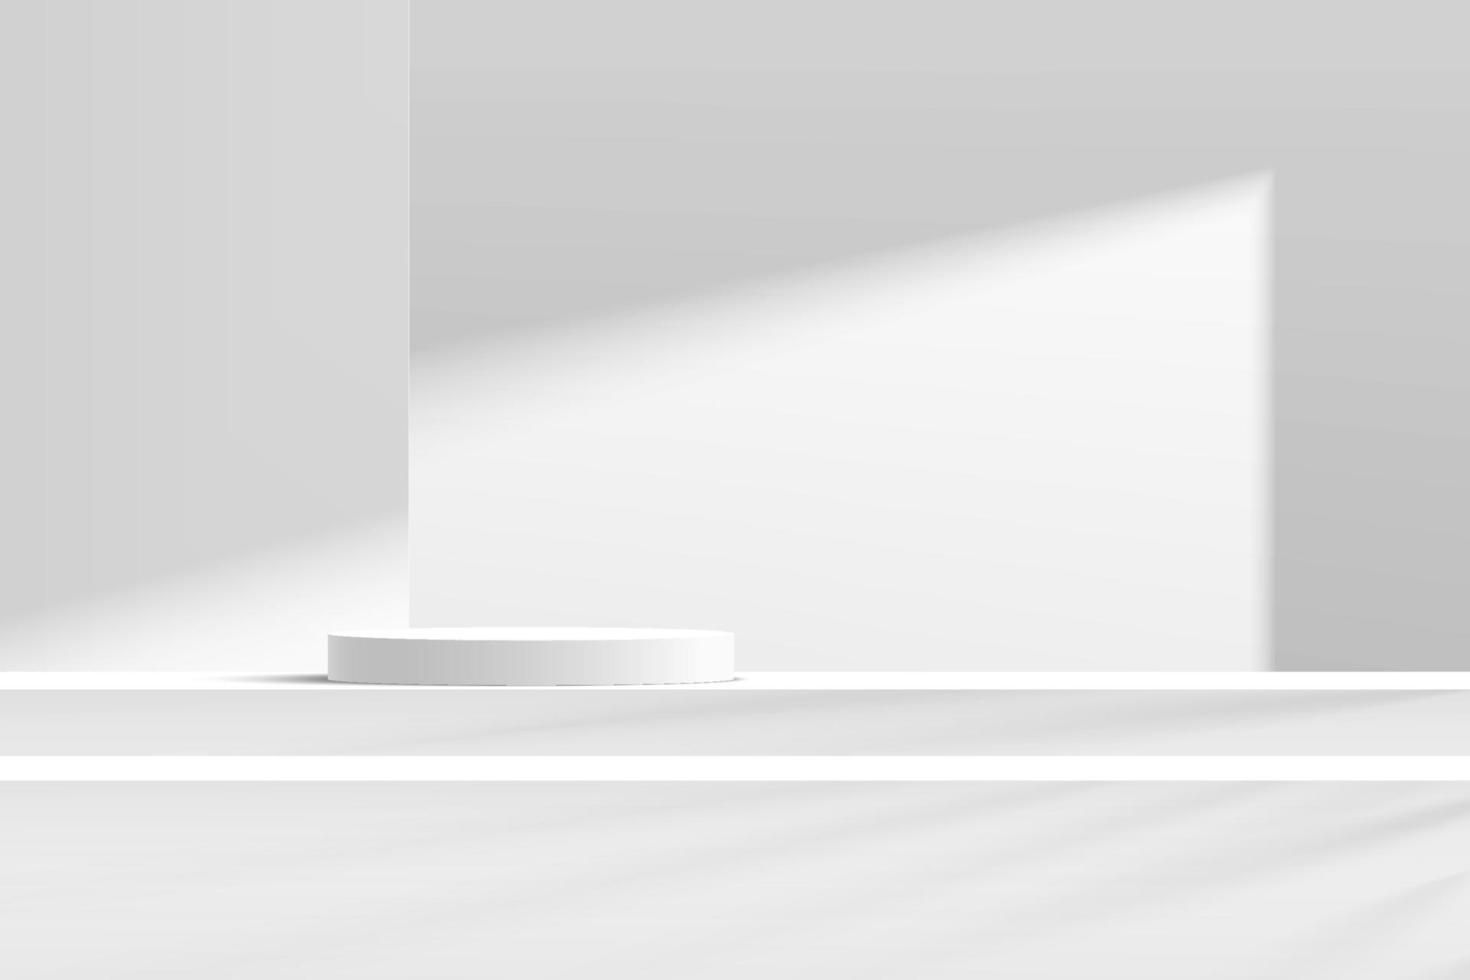 podio del piedistallo del cilindro bianco e grigio astratto 3d sul tavolo dei gradini con la scena della parete bianca in ombra. moderna piattaforma geometrica di rendering vettoriale per la presentazione di prodotti cosmetici.